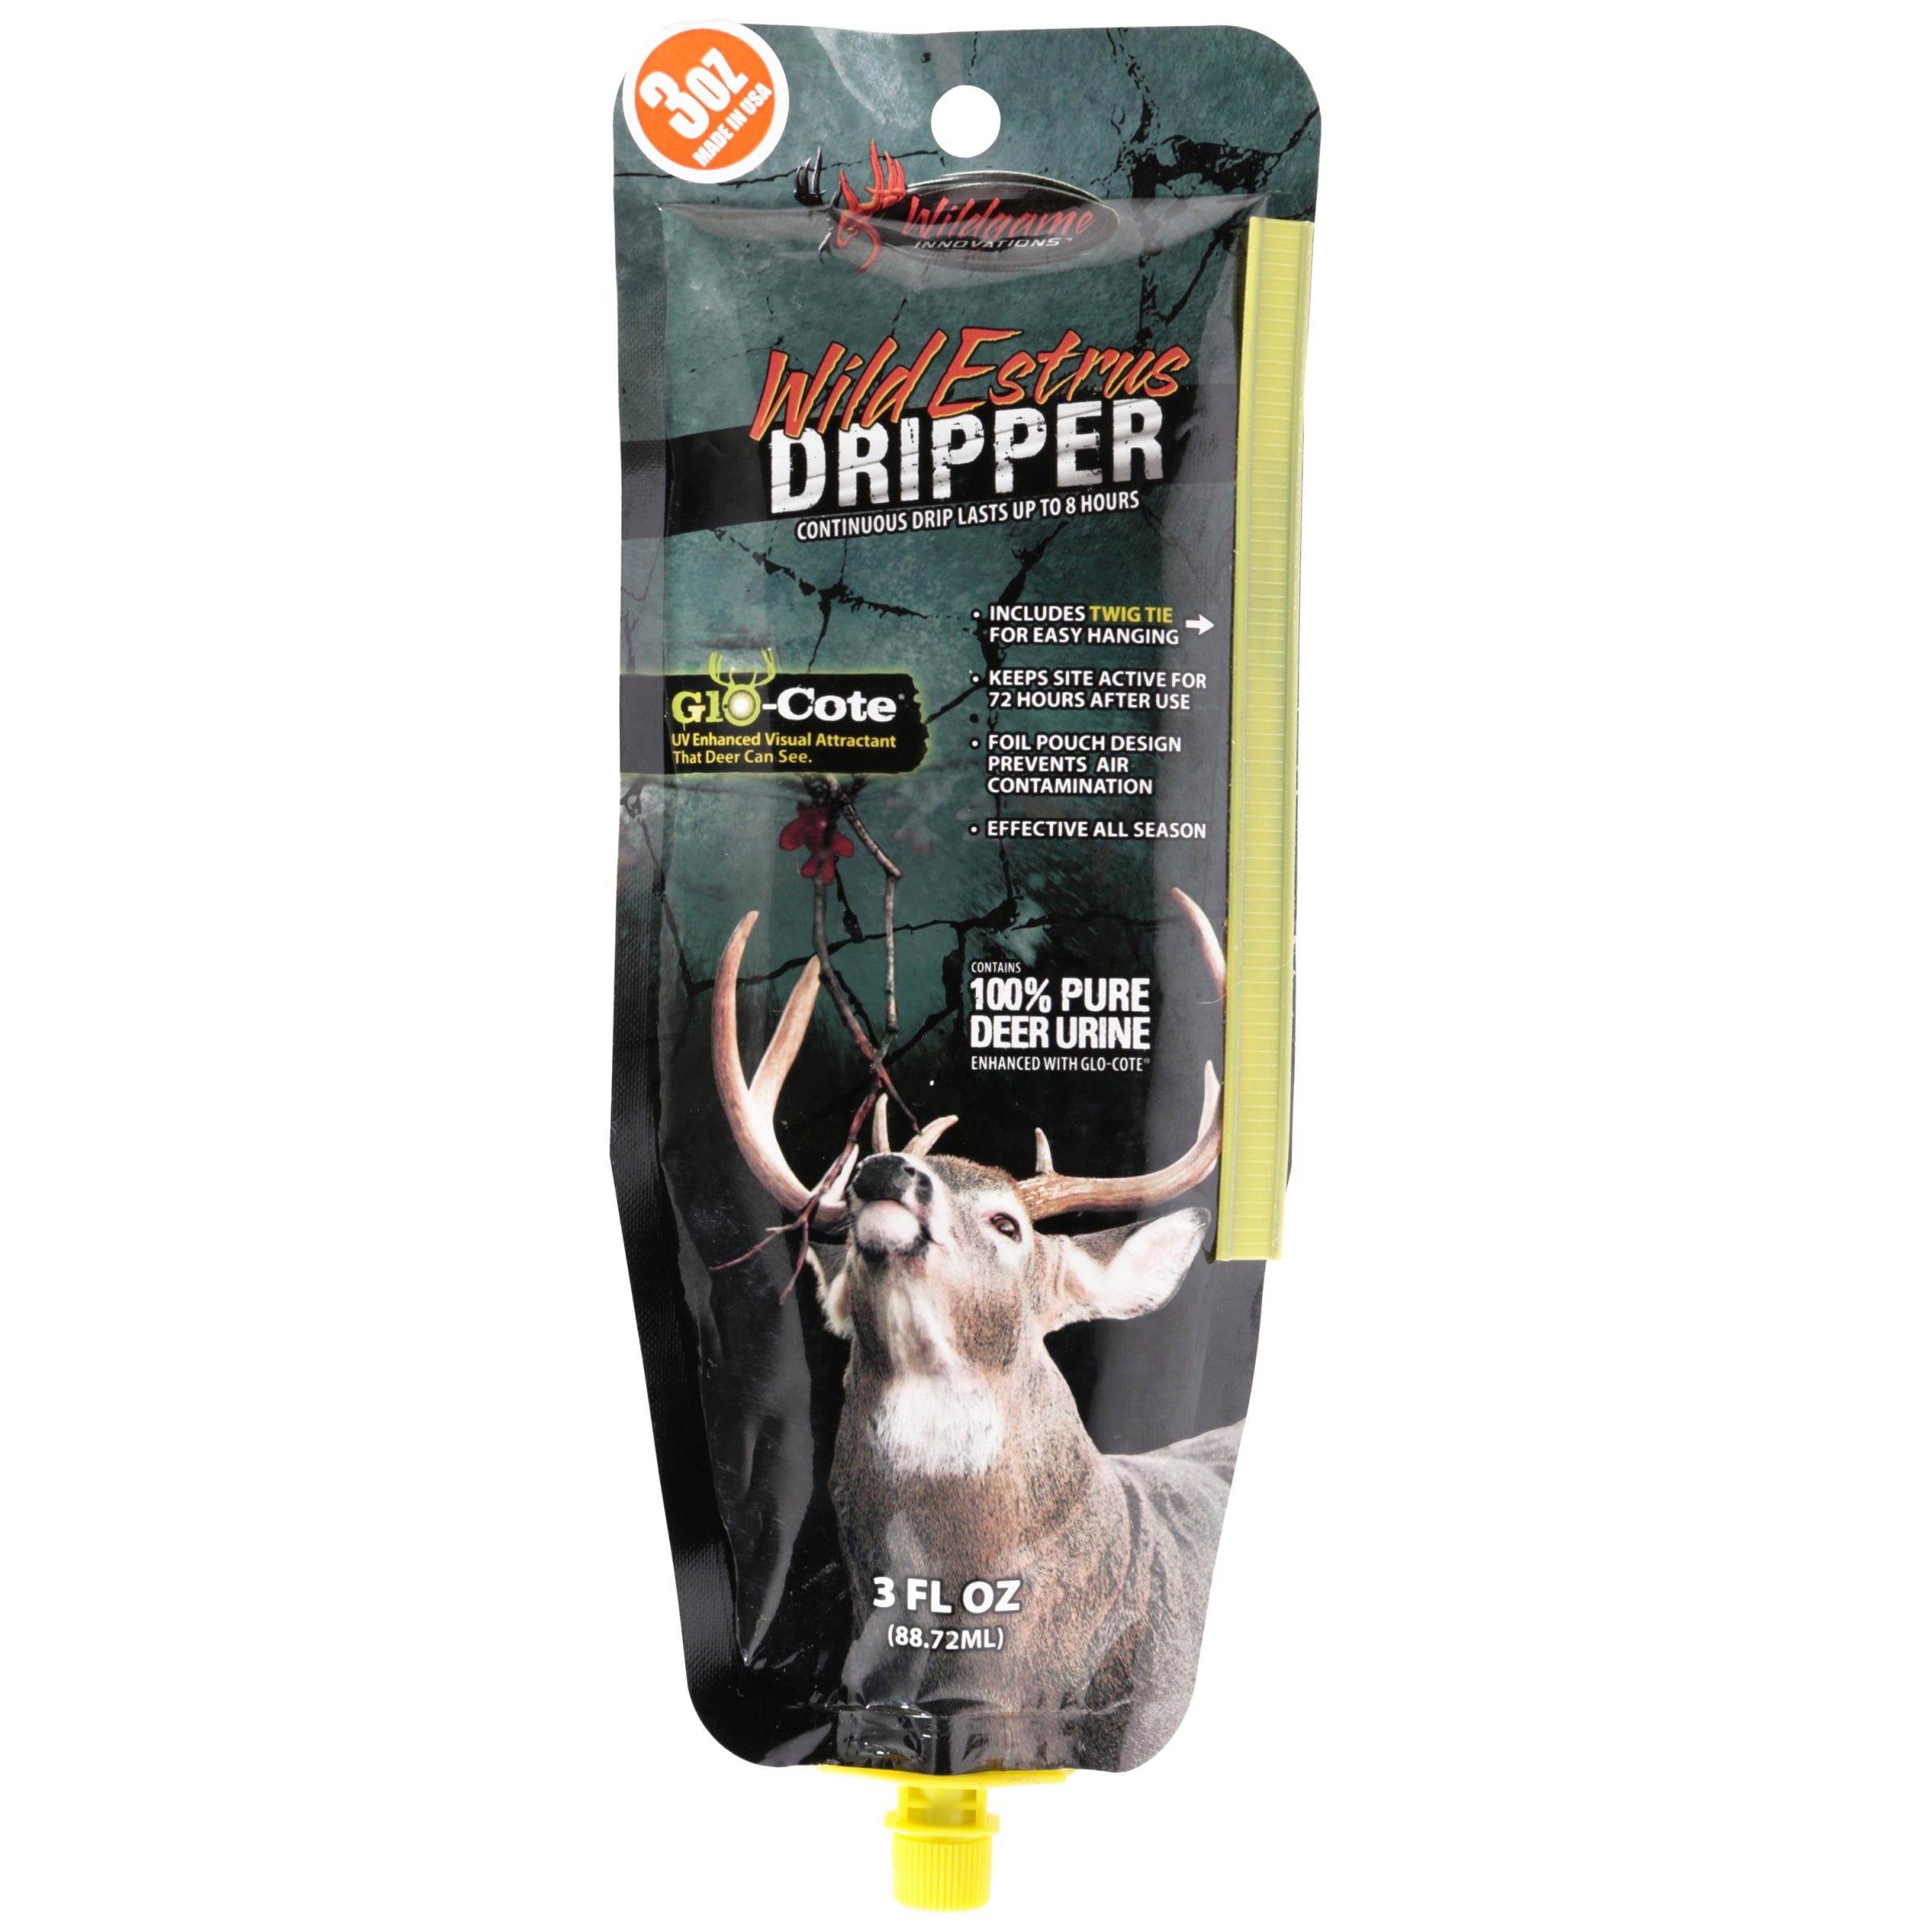 Wildgame Innovations™ Wild Estrus Deer Urine Dripper 3 fl. oz. Pouch ...